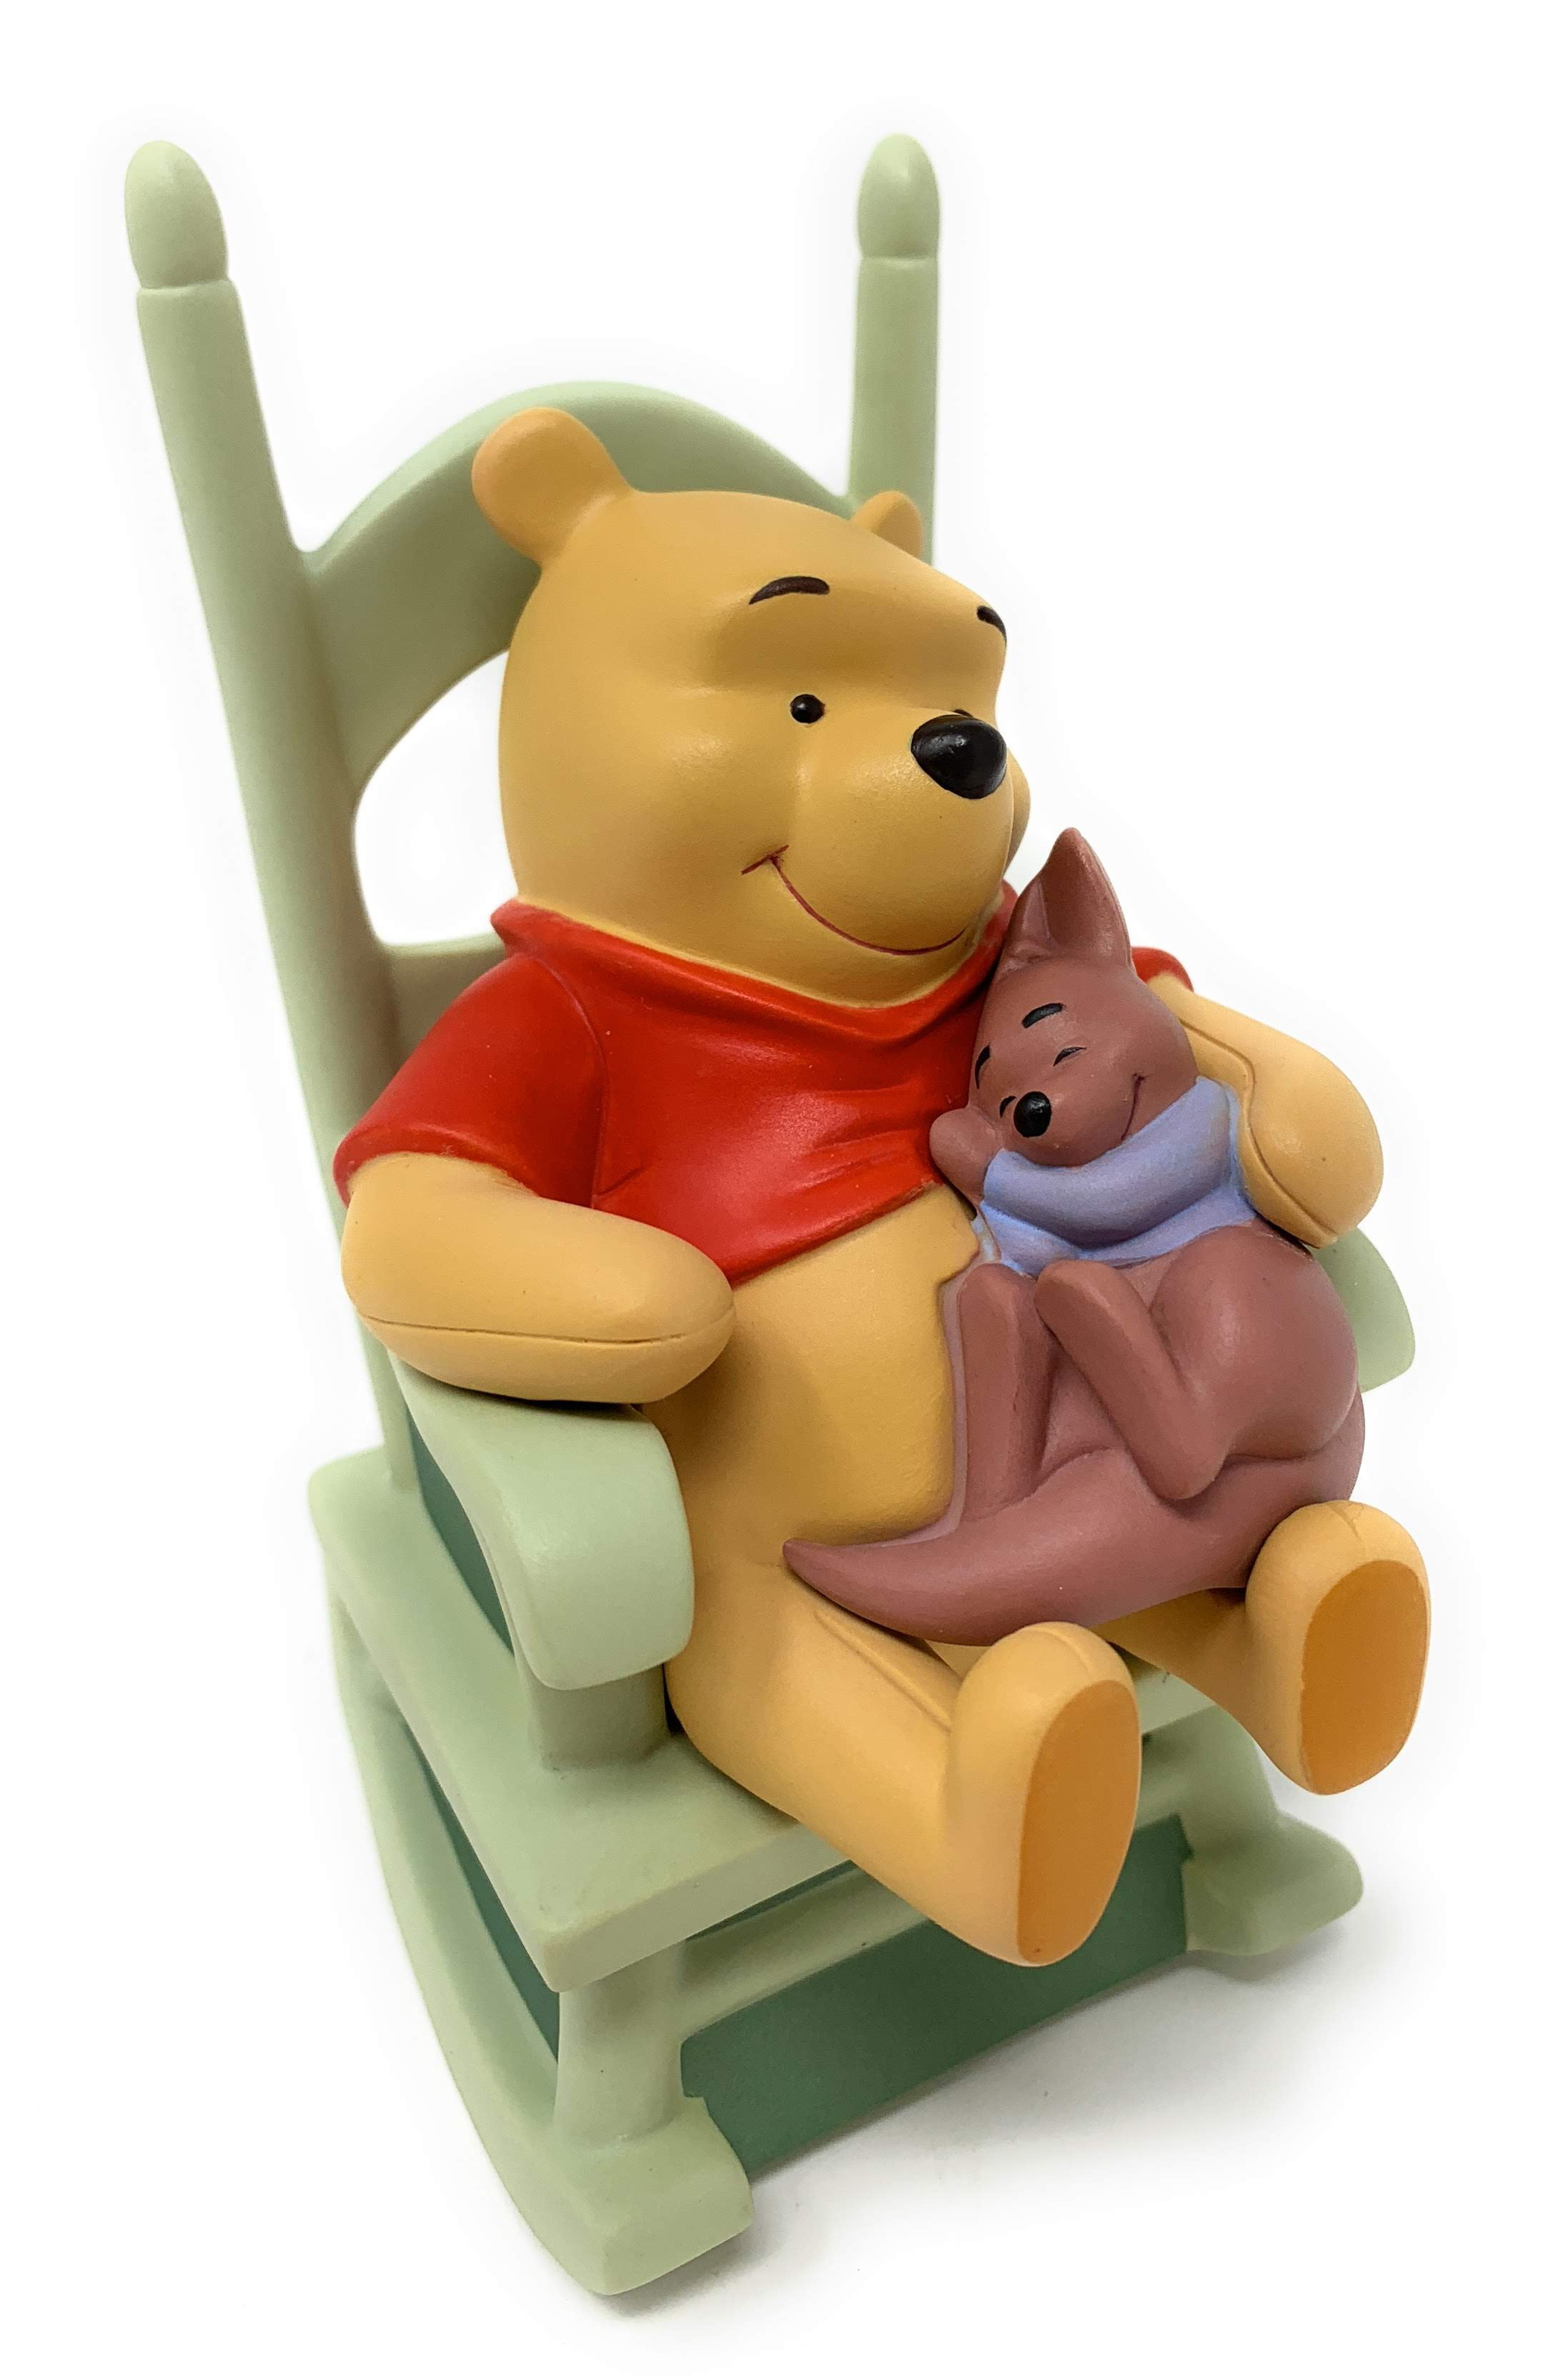 Sweet　Pooh　Figurine　Little　Friends　Dreams　One